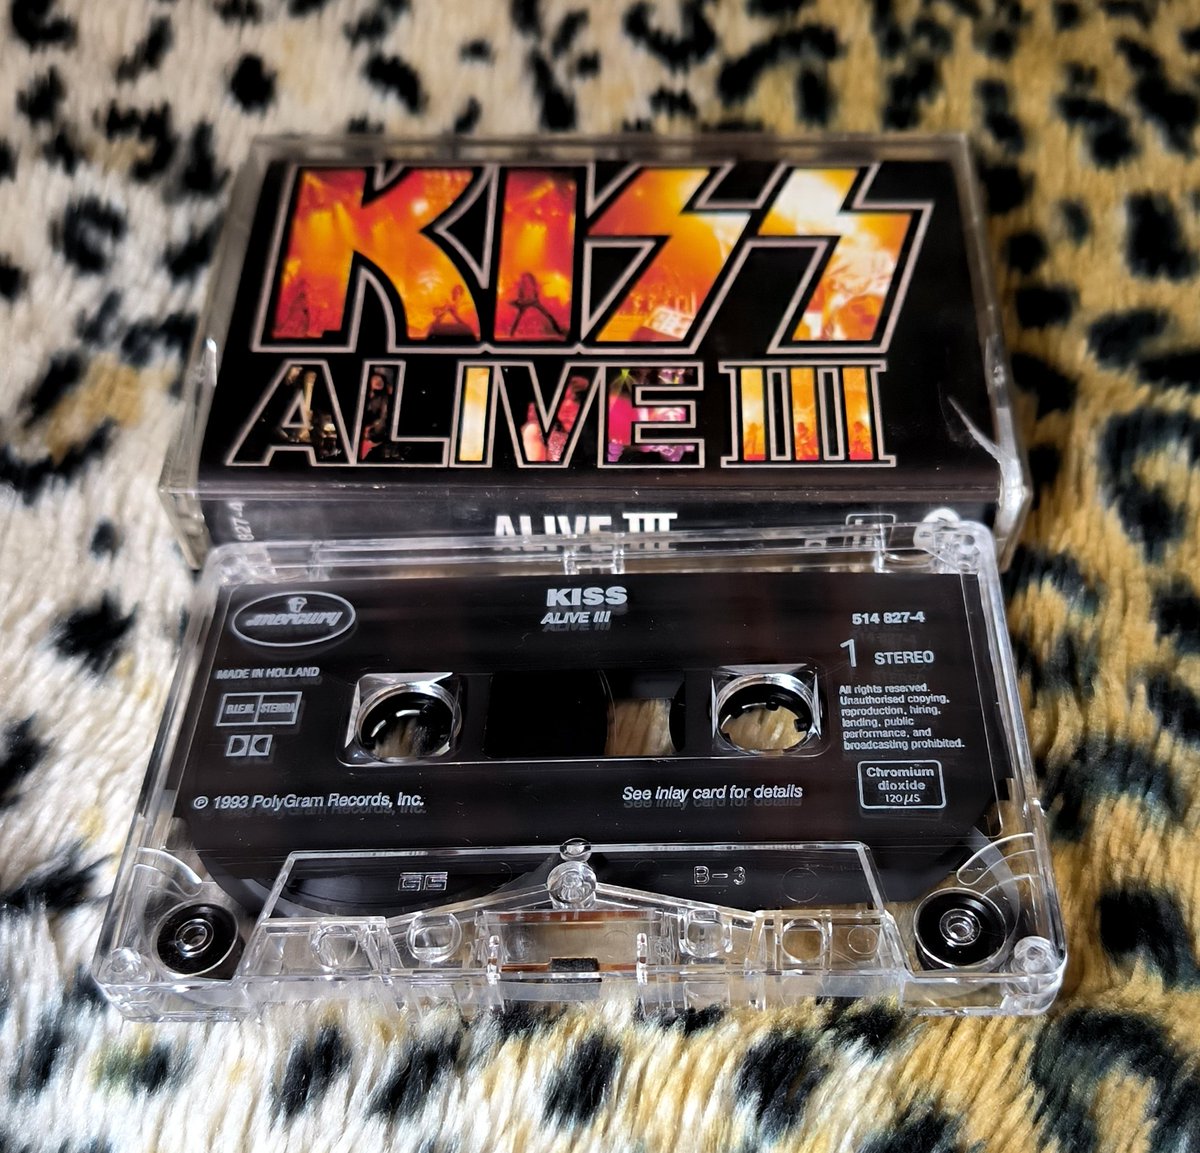 Un día como hoy en 1993, no es el Alive ni el Alive II para mi, pero hay que reconocer que es un grandísimo discazo de puro Rock and Roll. KISS 4EVER!!! #kiss #aliveIII #legends